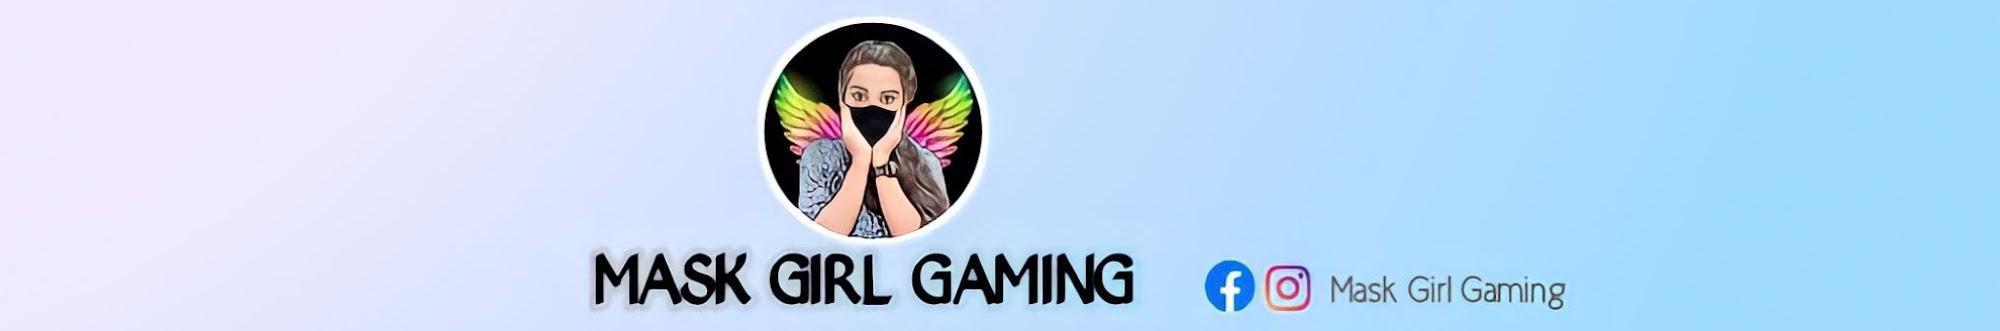 Mask Girl Gaming